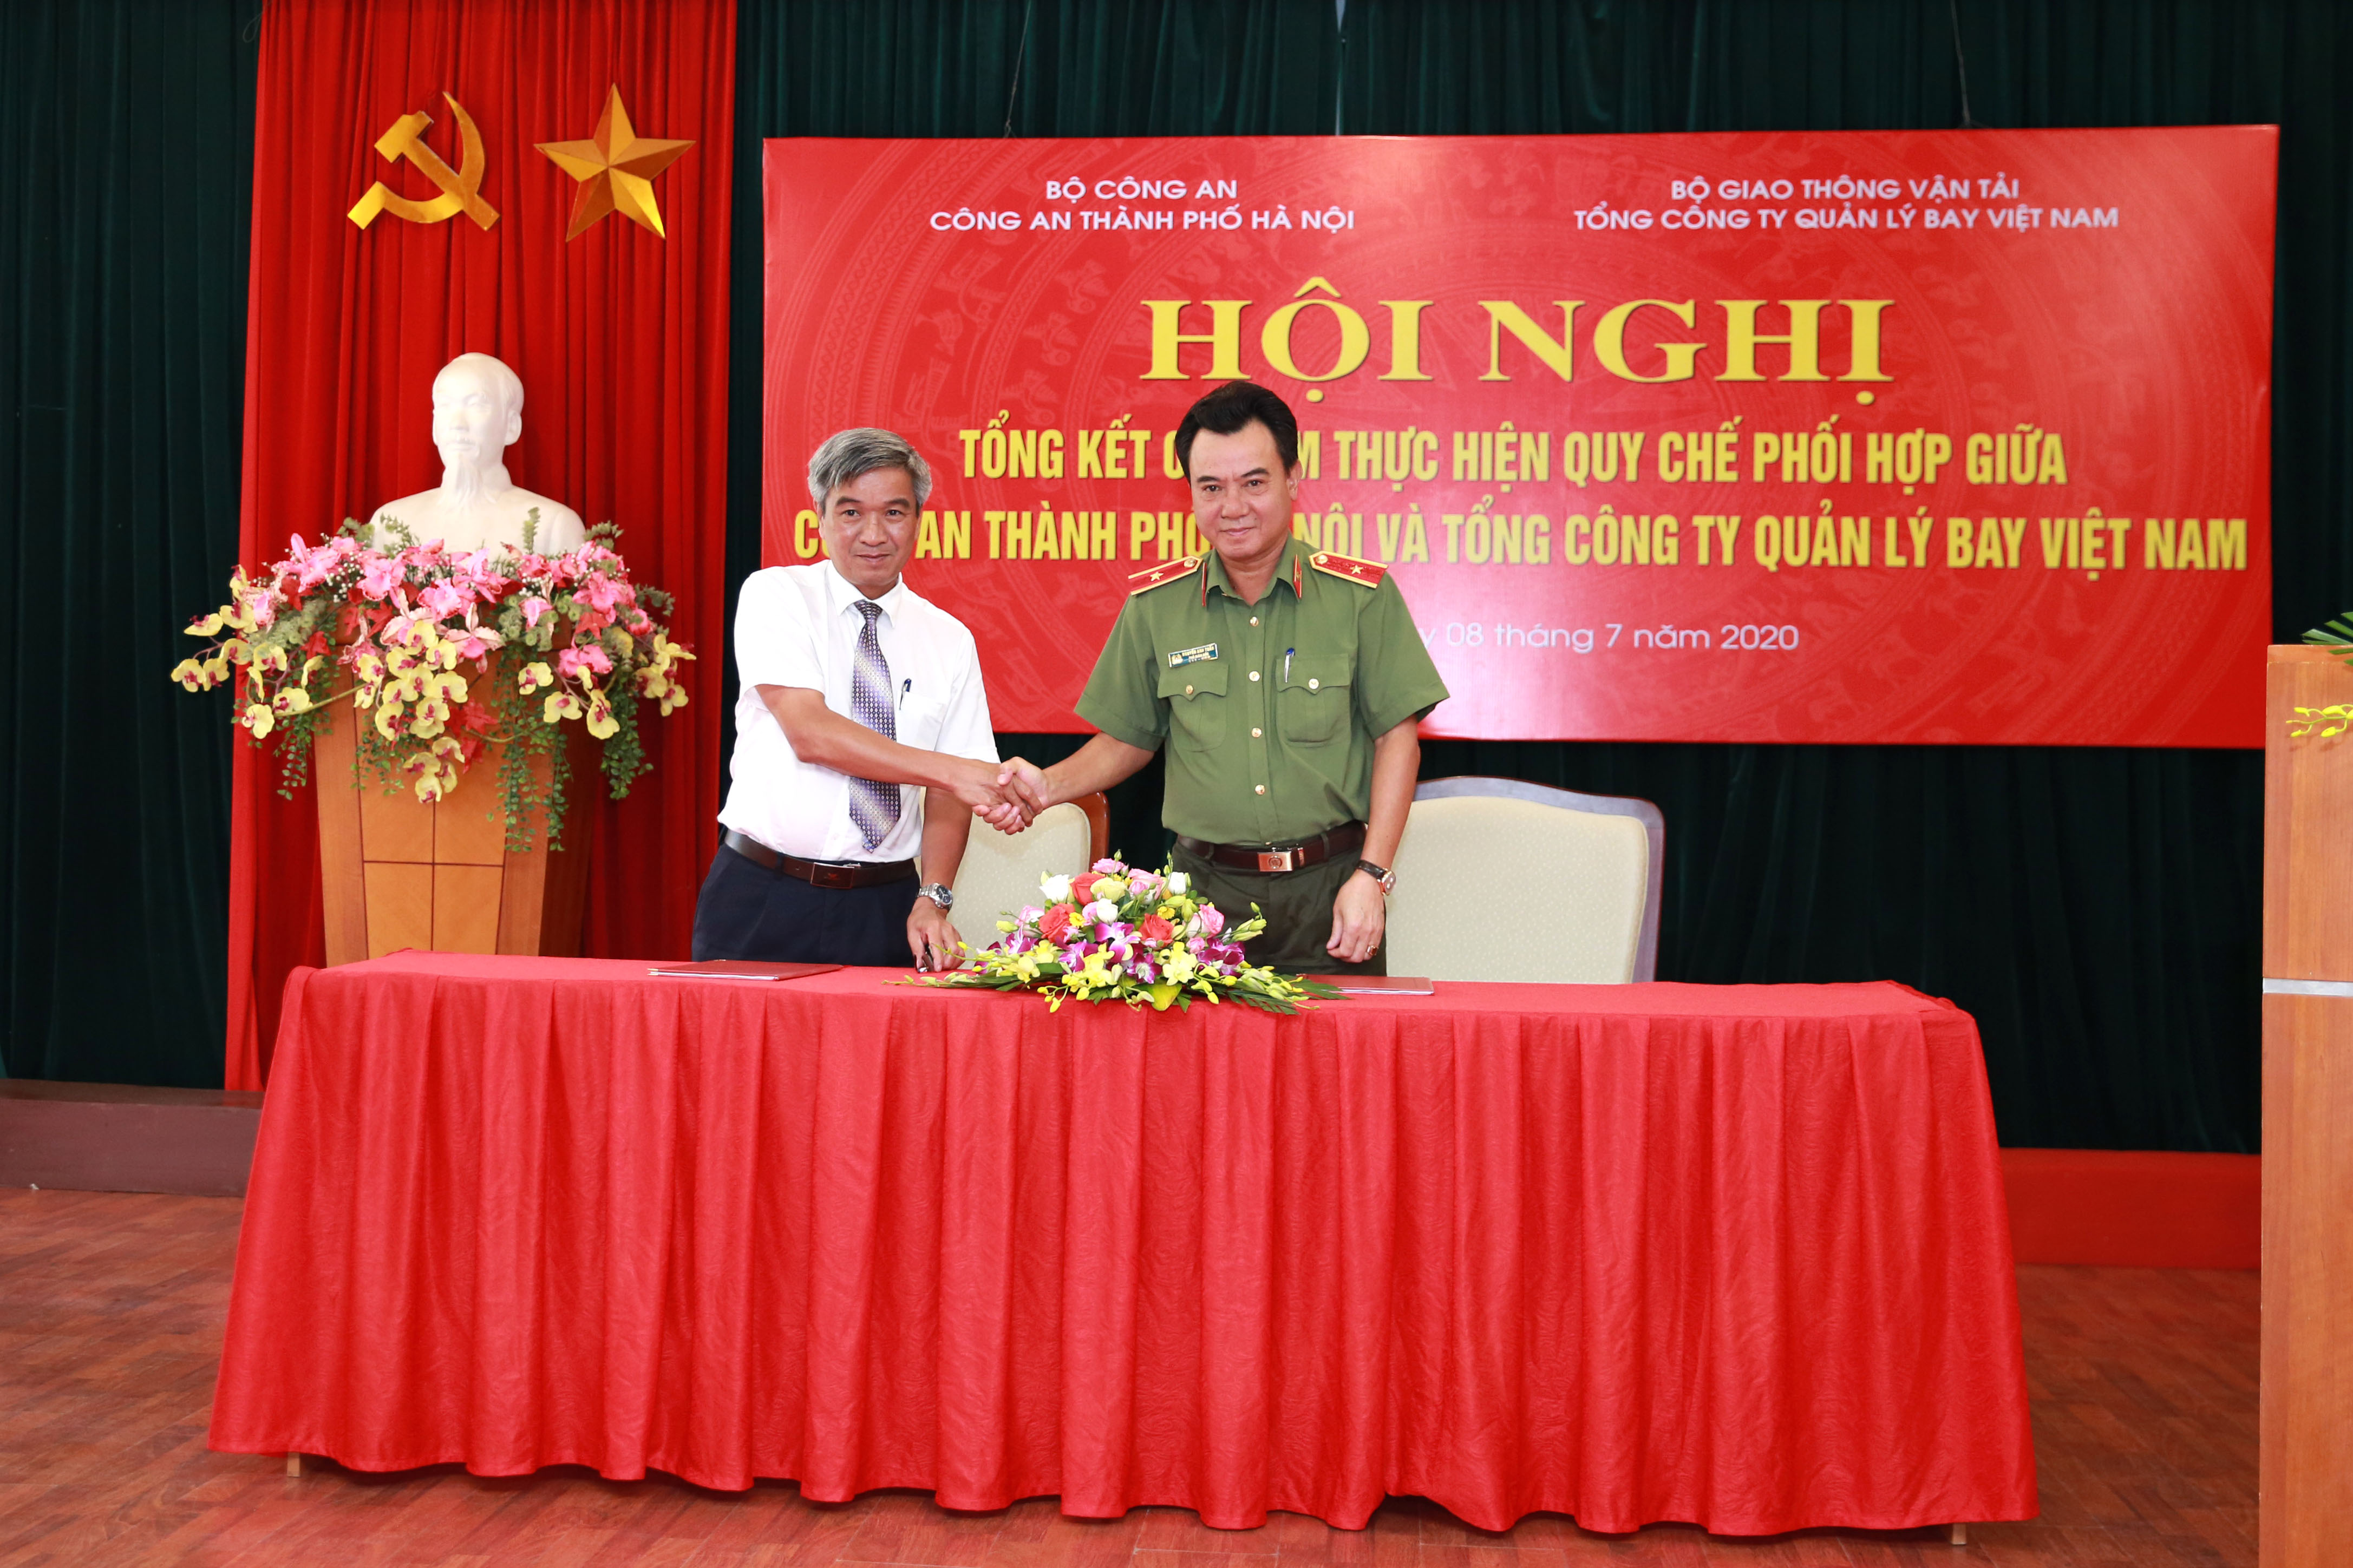 Hội nghị Tổng kết 03 năm thực hiện Quy chế phối hợp giữa Công an Thành phố Hà Nội và Tổng công ty Quản lý bay Việt Nam